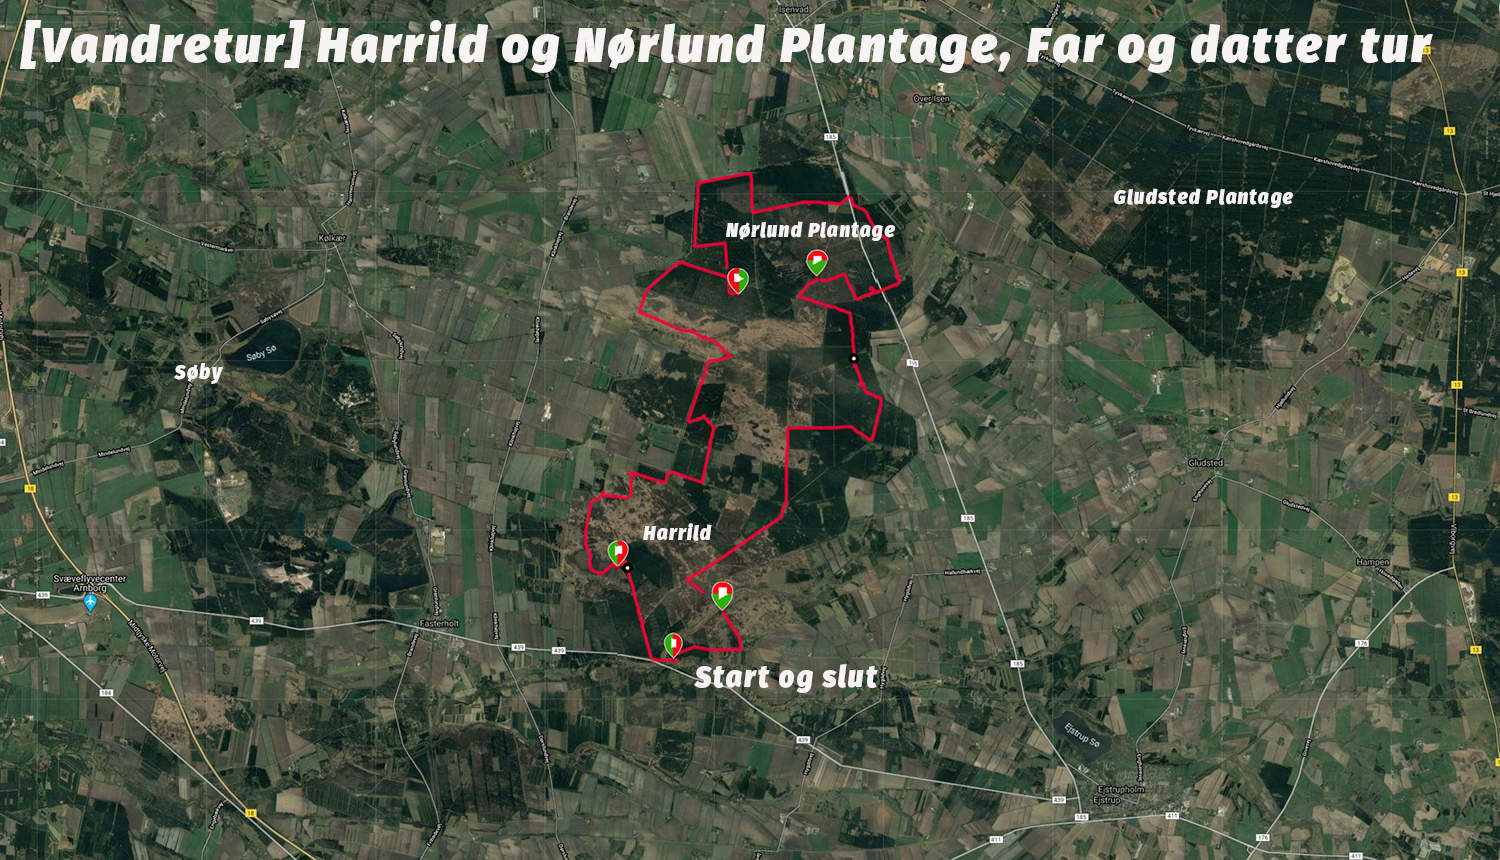 [Vandretur] Harrild og Nørlund Plantage, Far og datter tur, kort 5-9 april 2020